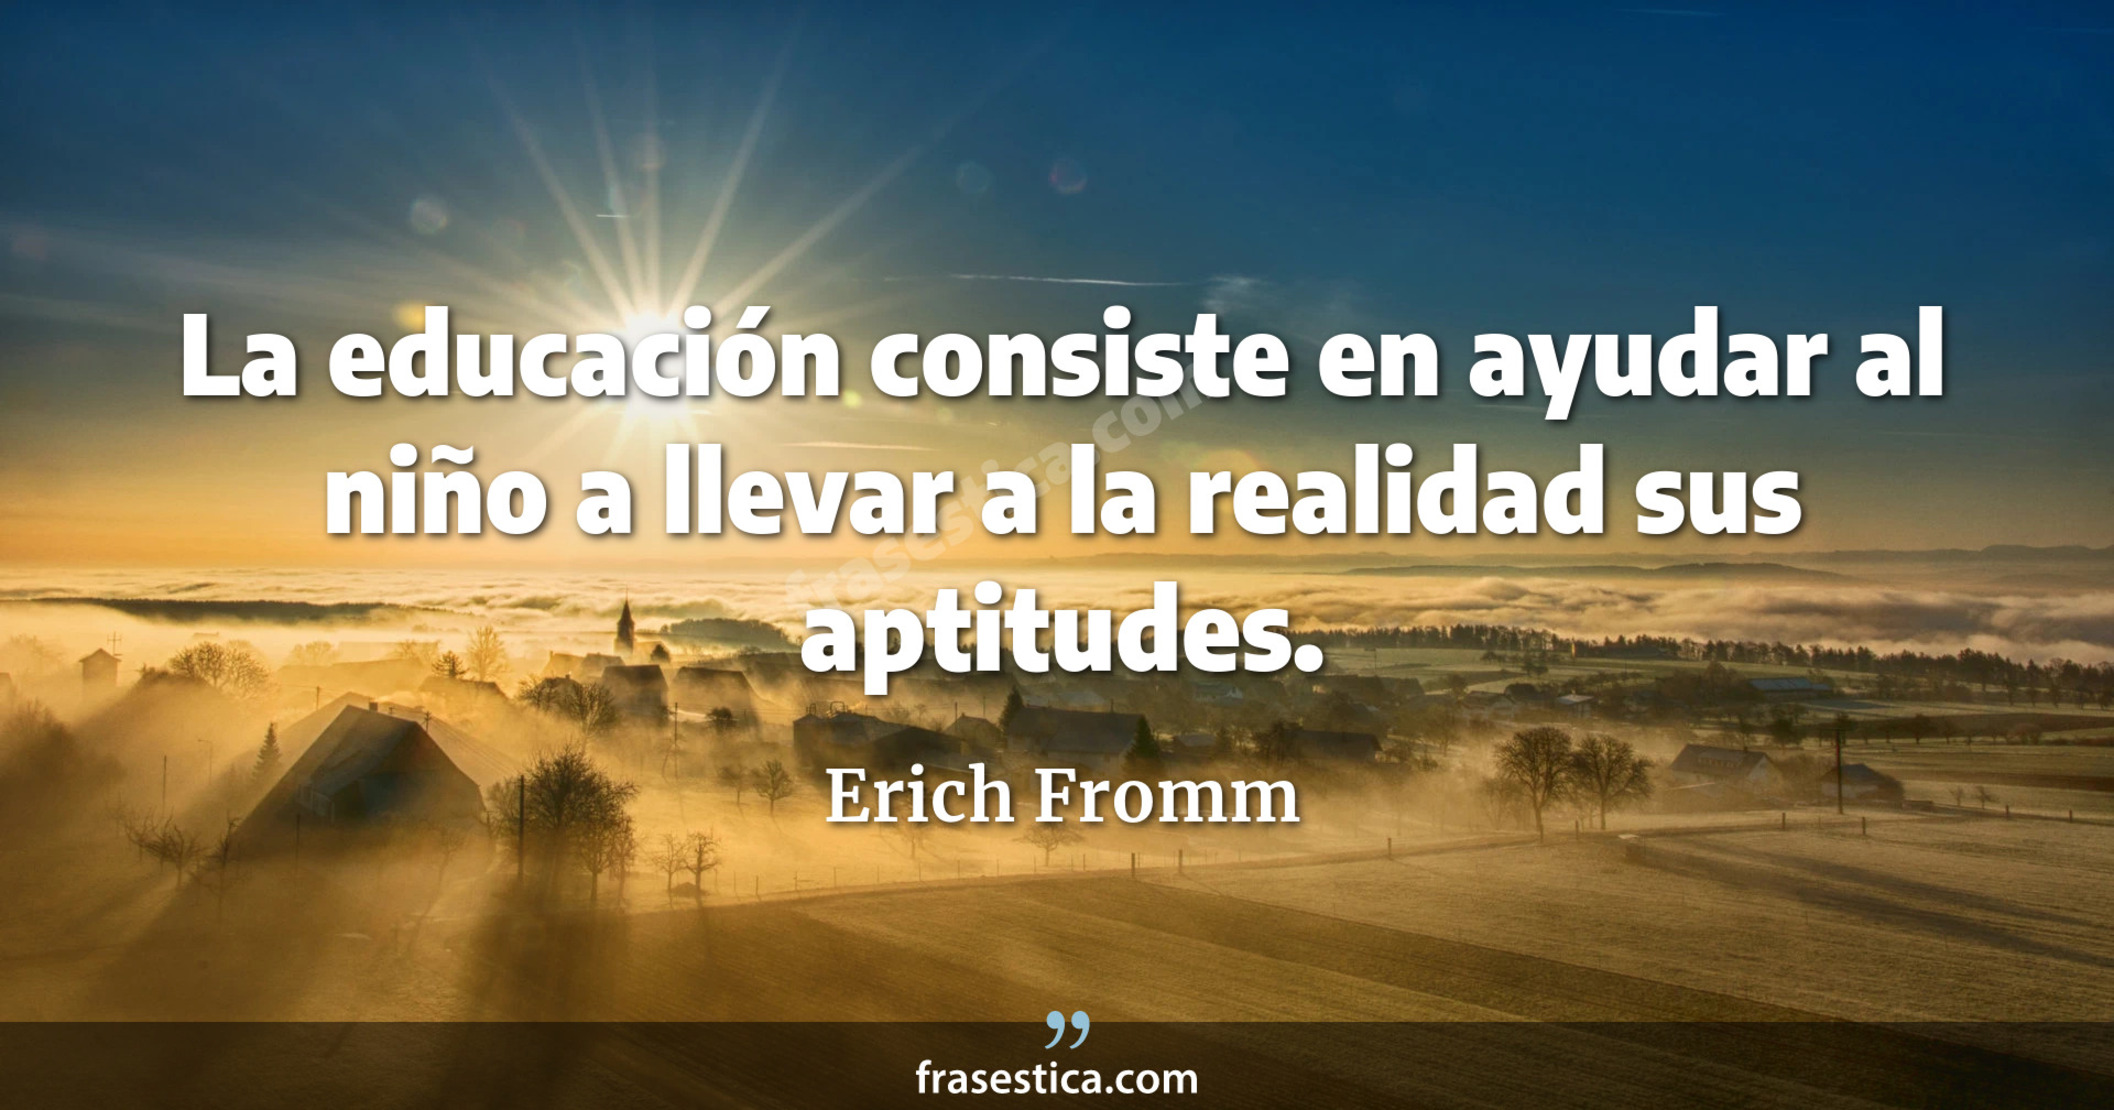 La educación consiste en ayudar al niño a llevar a la realidad sus aptitudes. - Erich Fromm